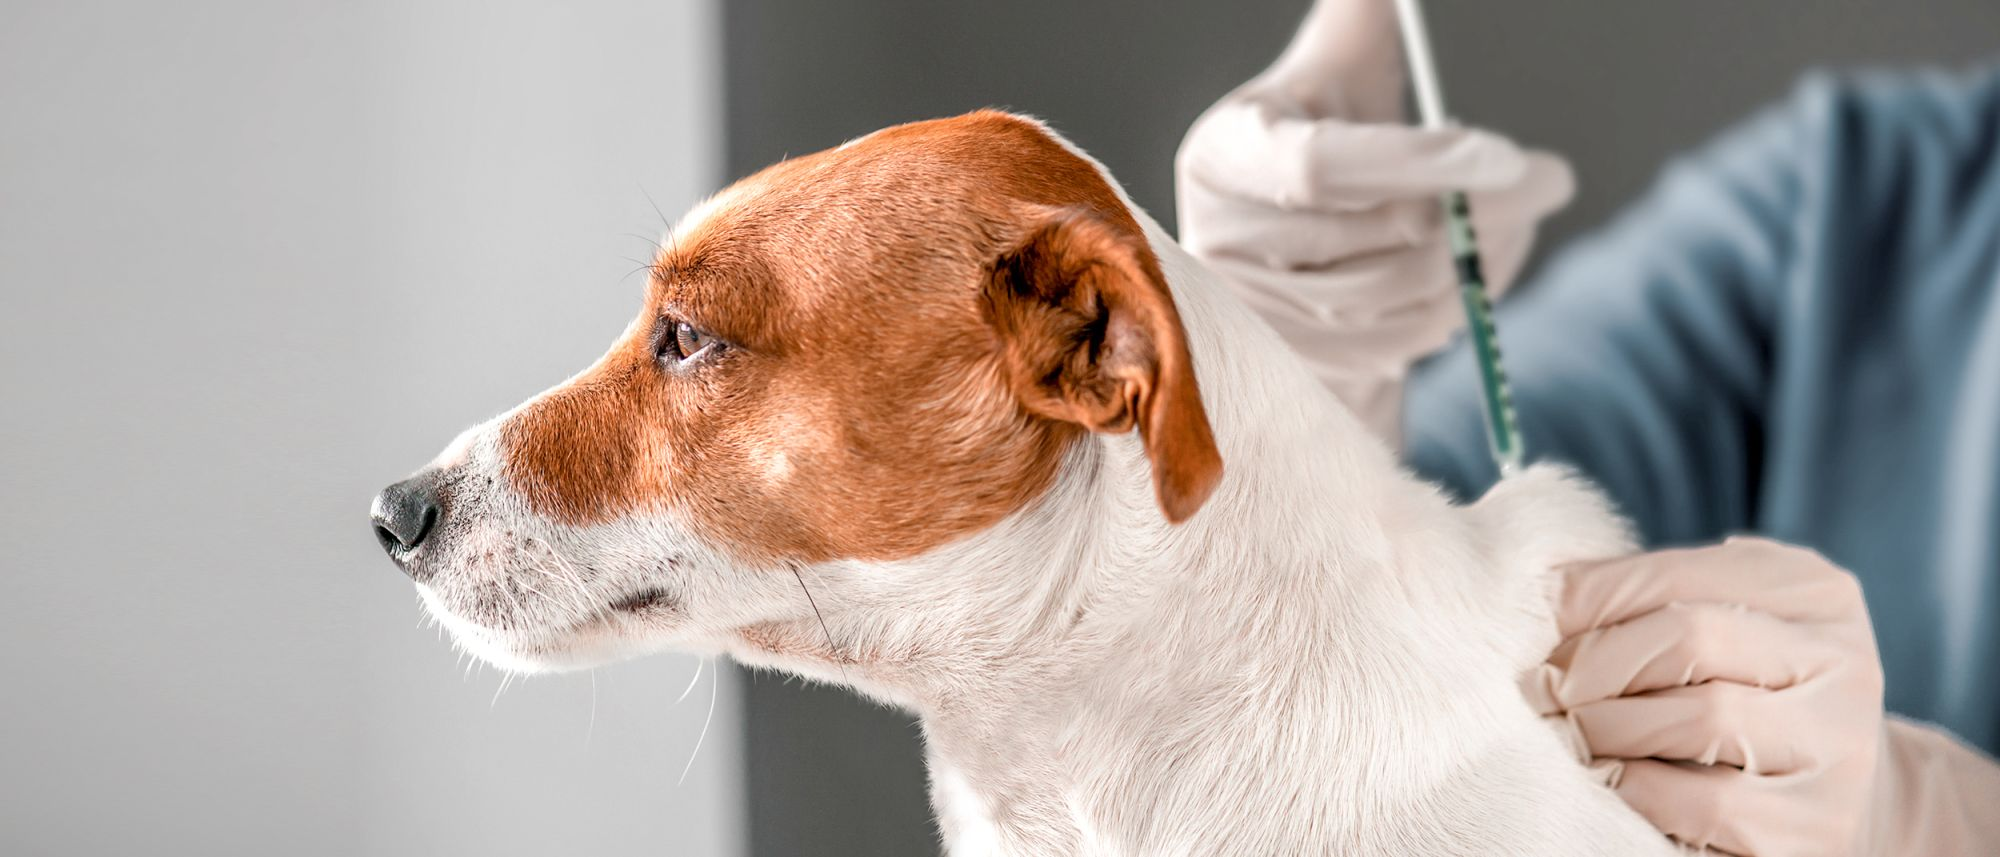 Ein junger Jack Russell Terrier, von dem nur Kopf und Nacken sichtbar sind, bekommt von zwei Händen in Einmal-Handschuhen eine Spritze in den Nacken